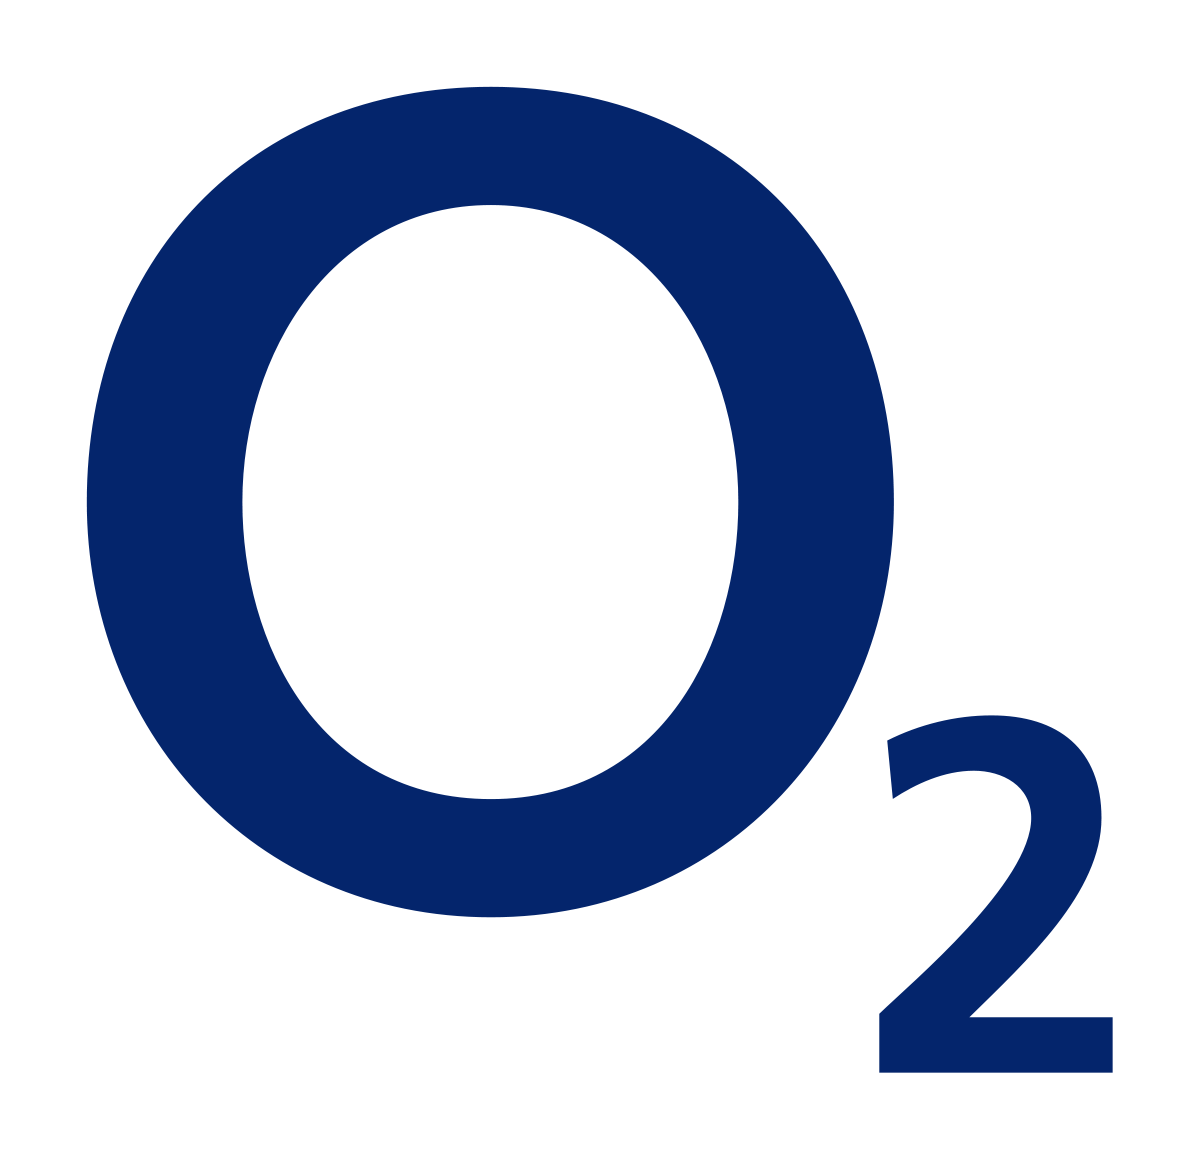 O2 logo.